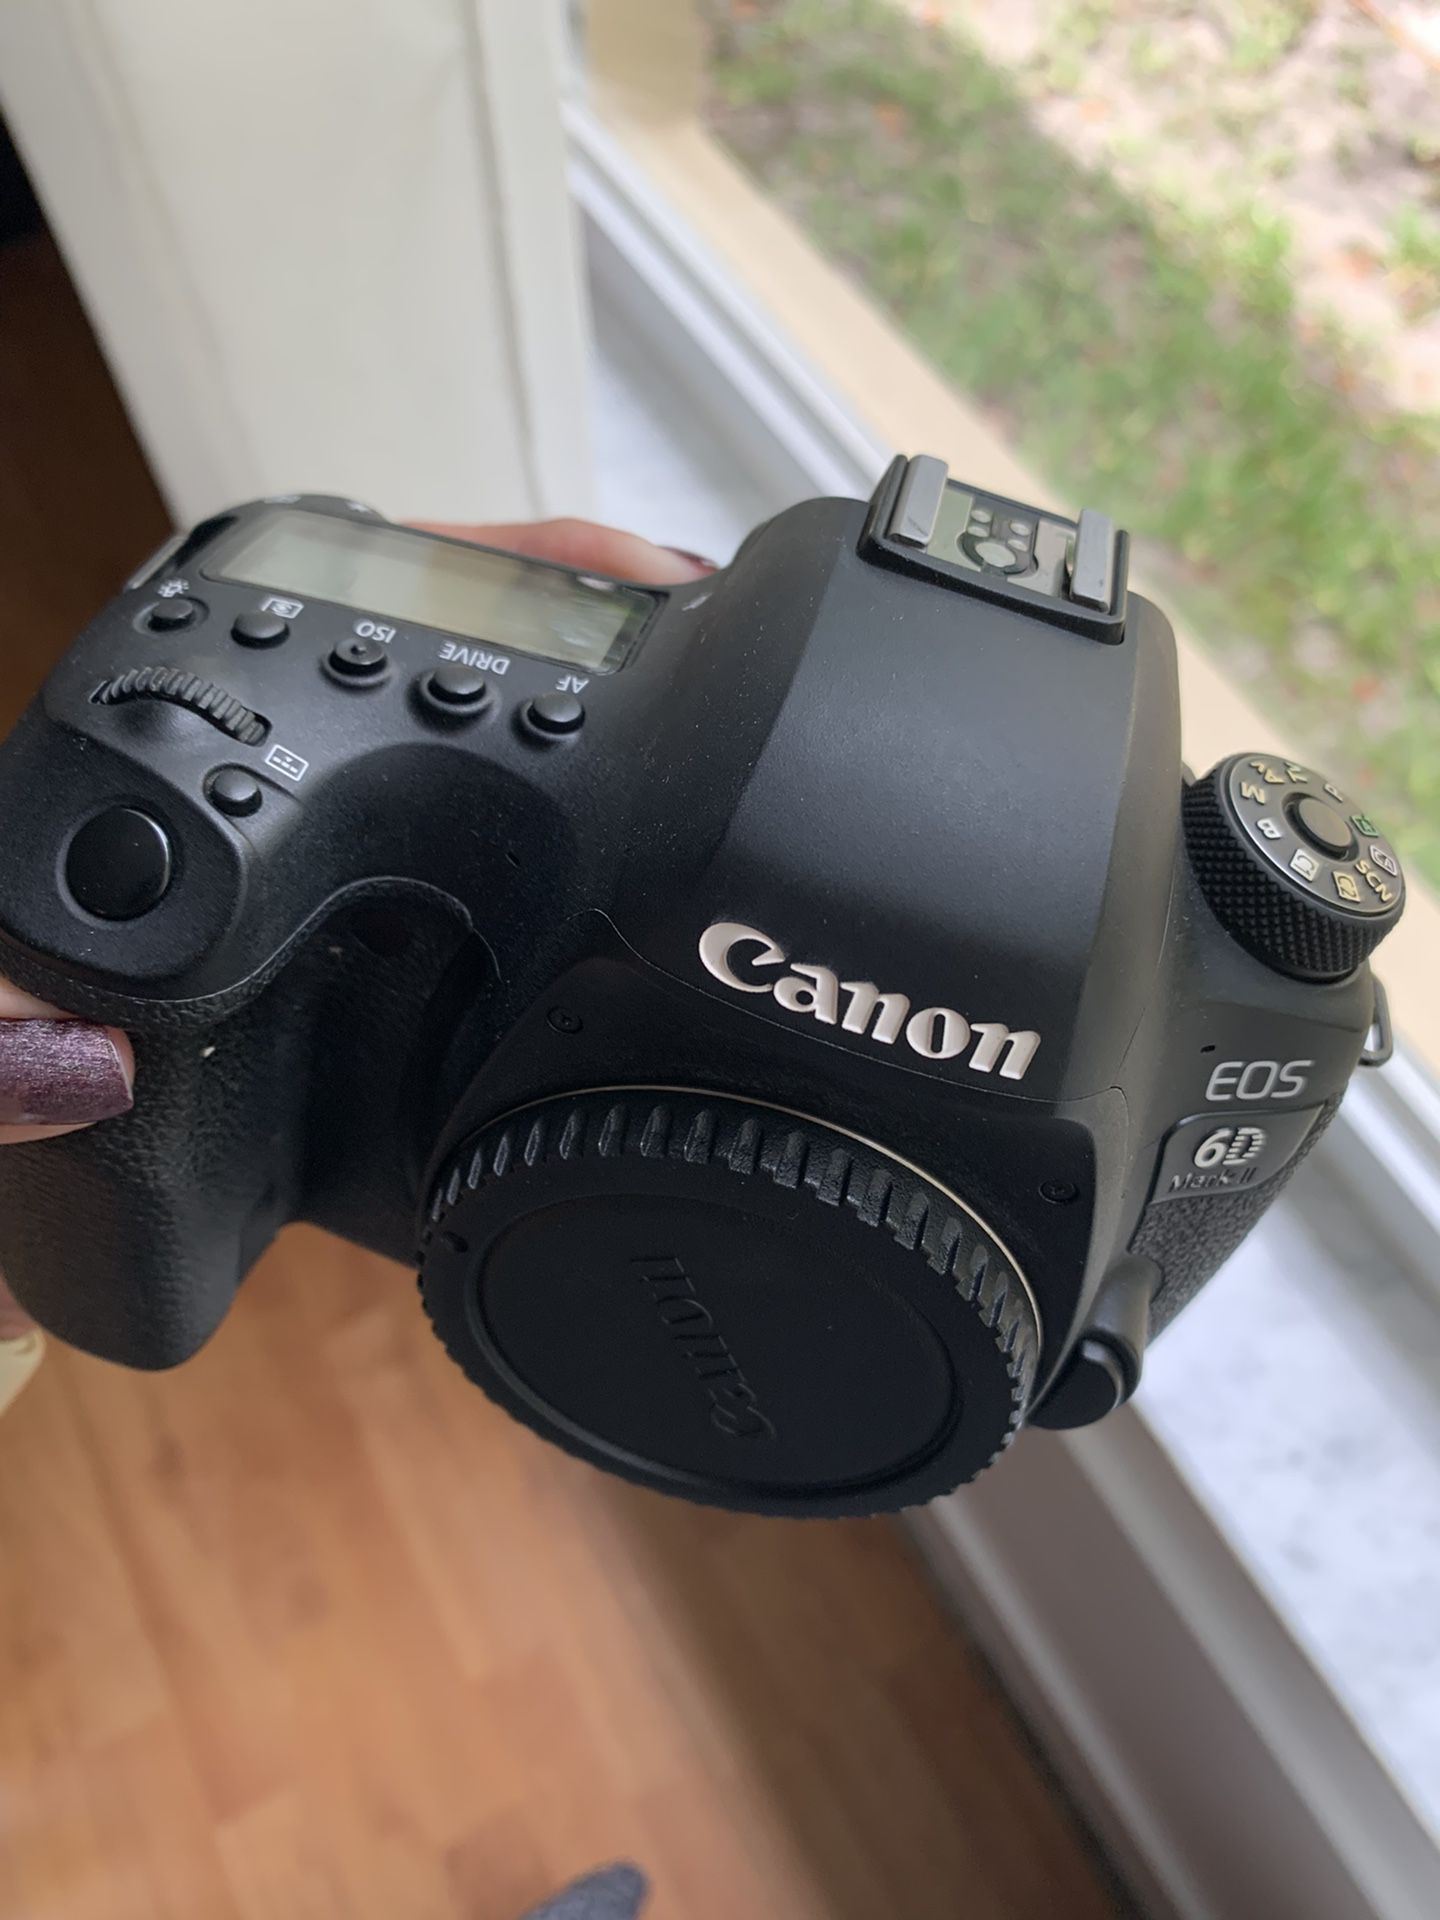 Canon EOS 6D Mark II Digital SLR Camera Body, Wi-Fi Enabled 